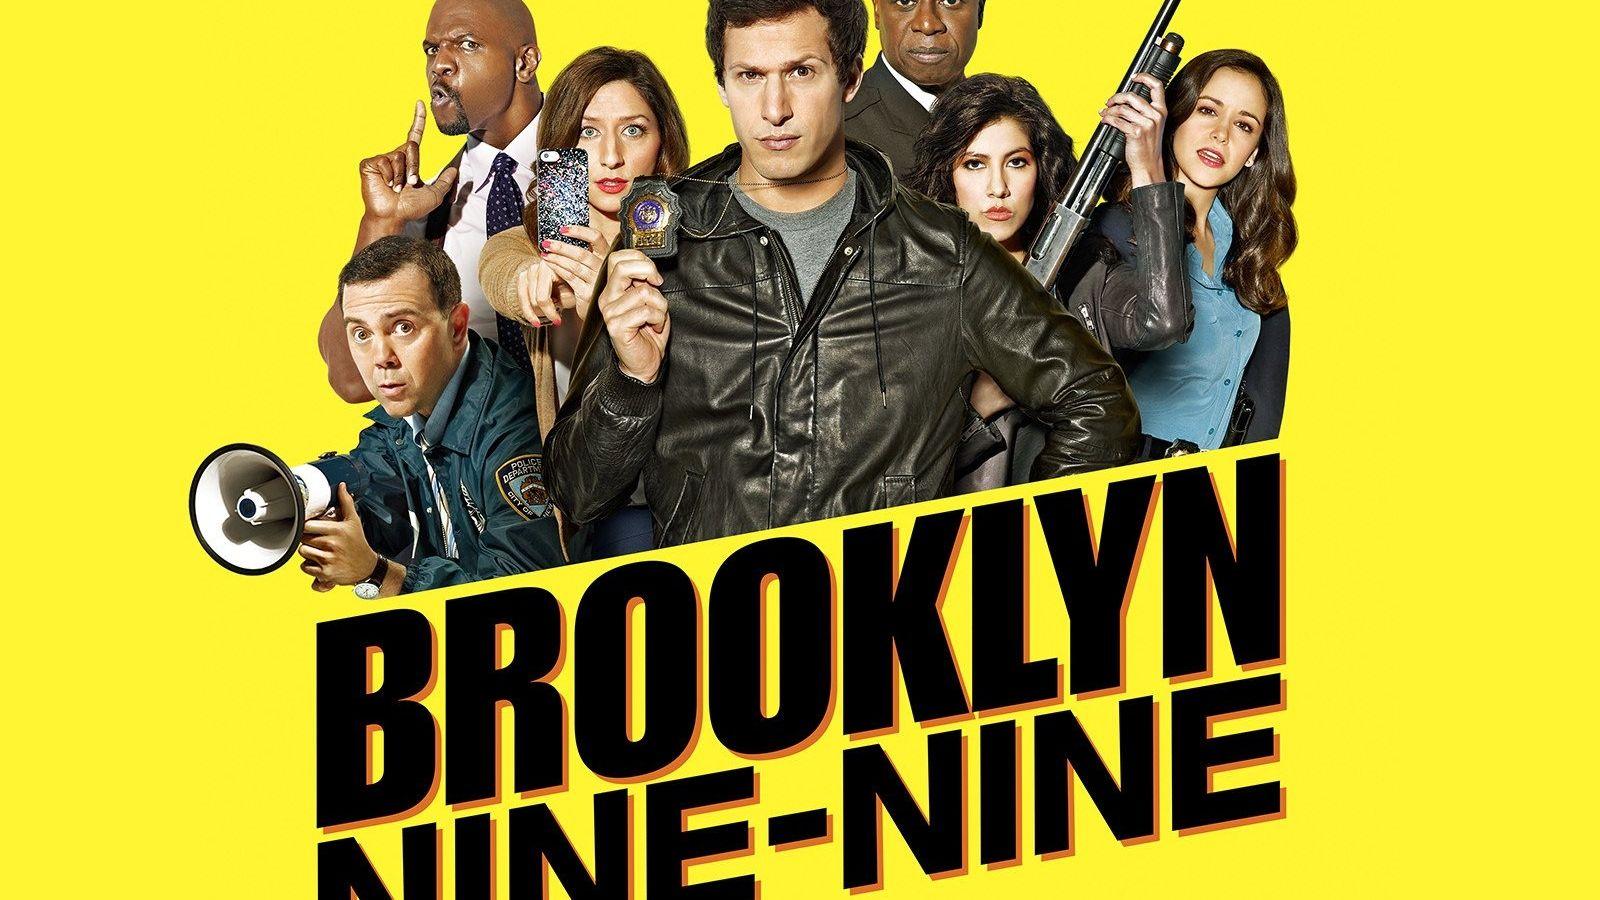 Brooklyn Nine-Nine (TV Series) Wallpapers (43+ images inside)